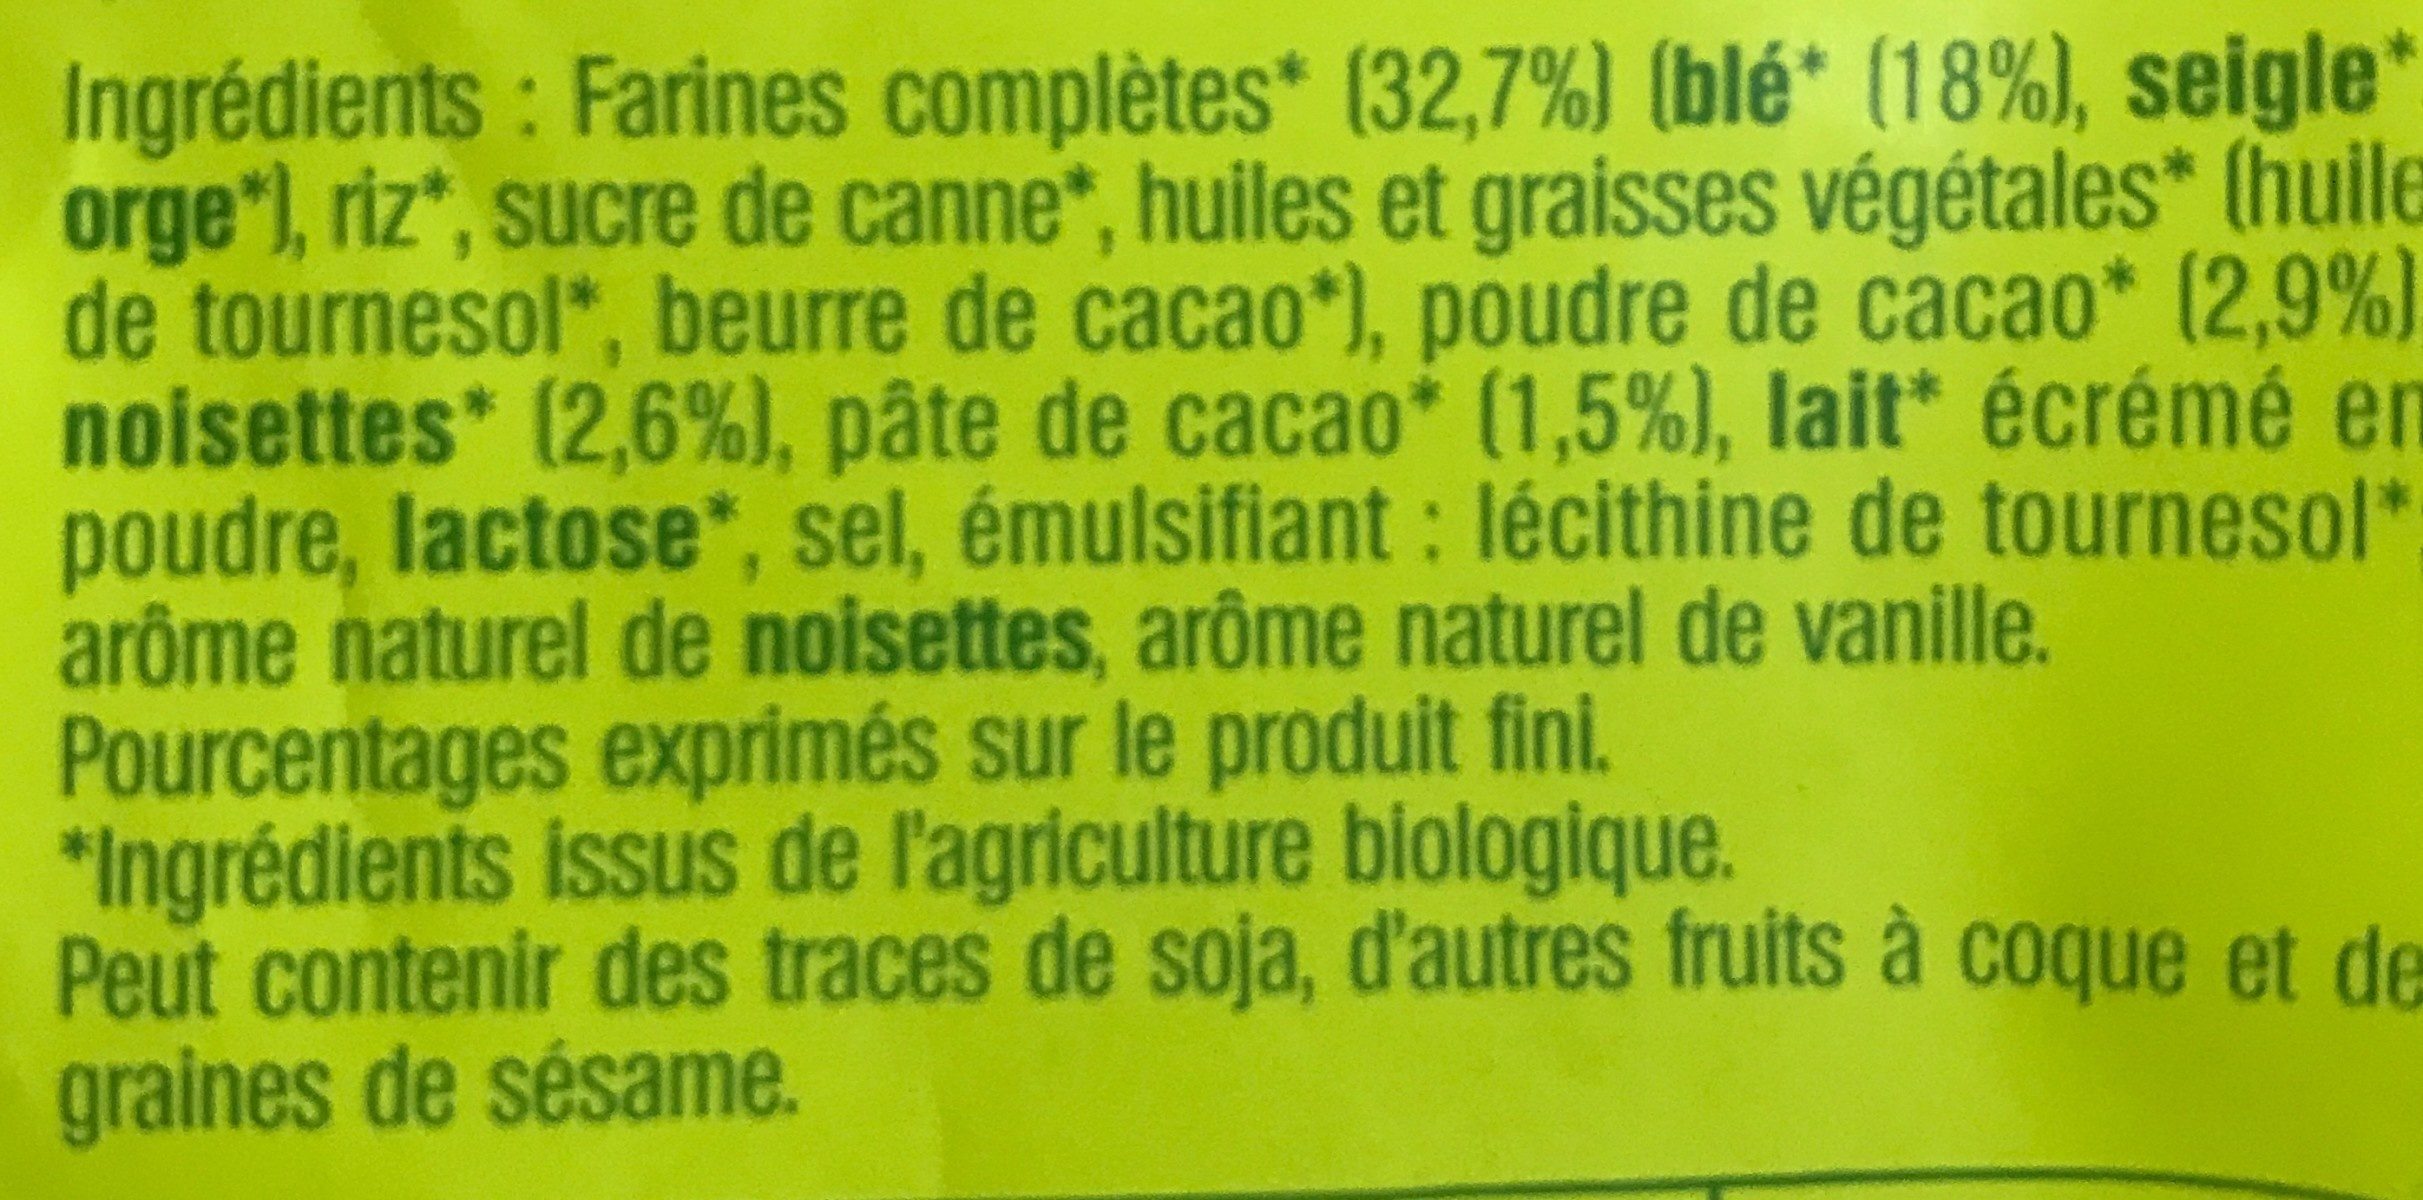 Fourrés cacao - Ingrediënten - fr